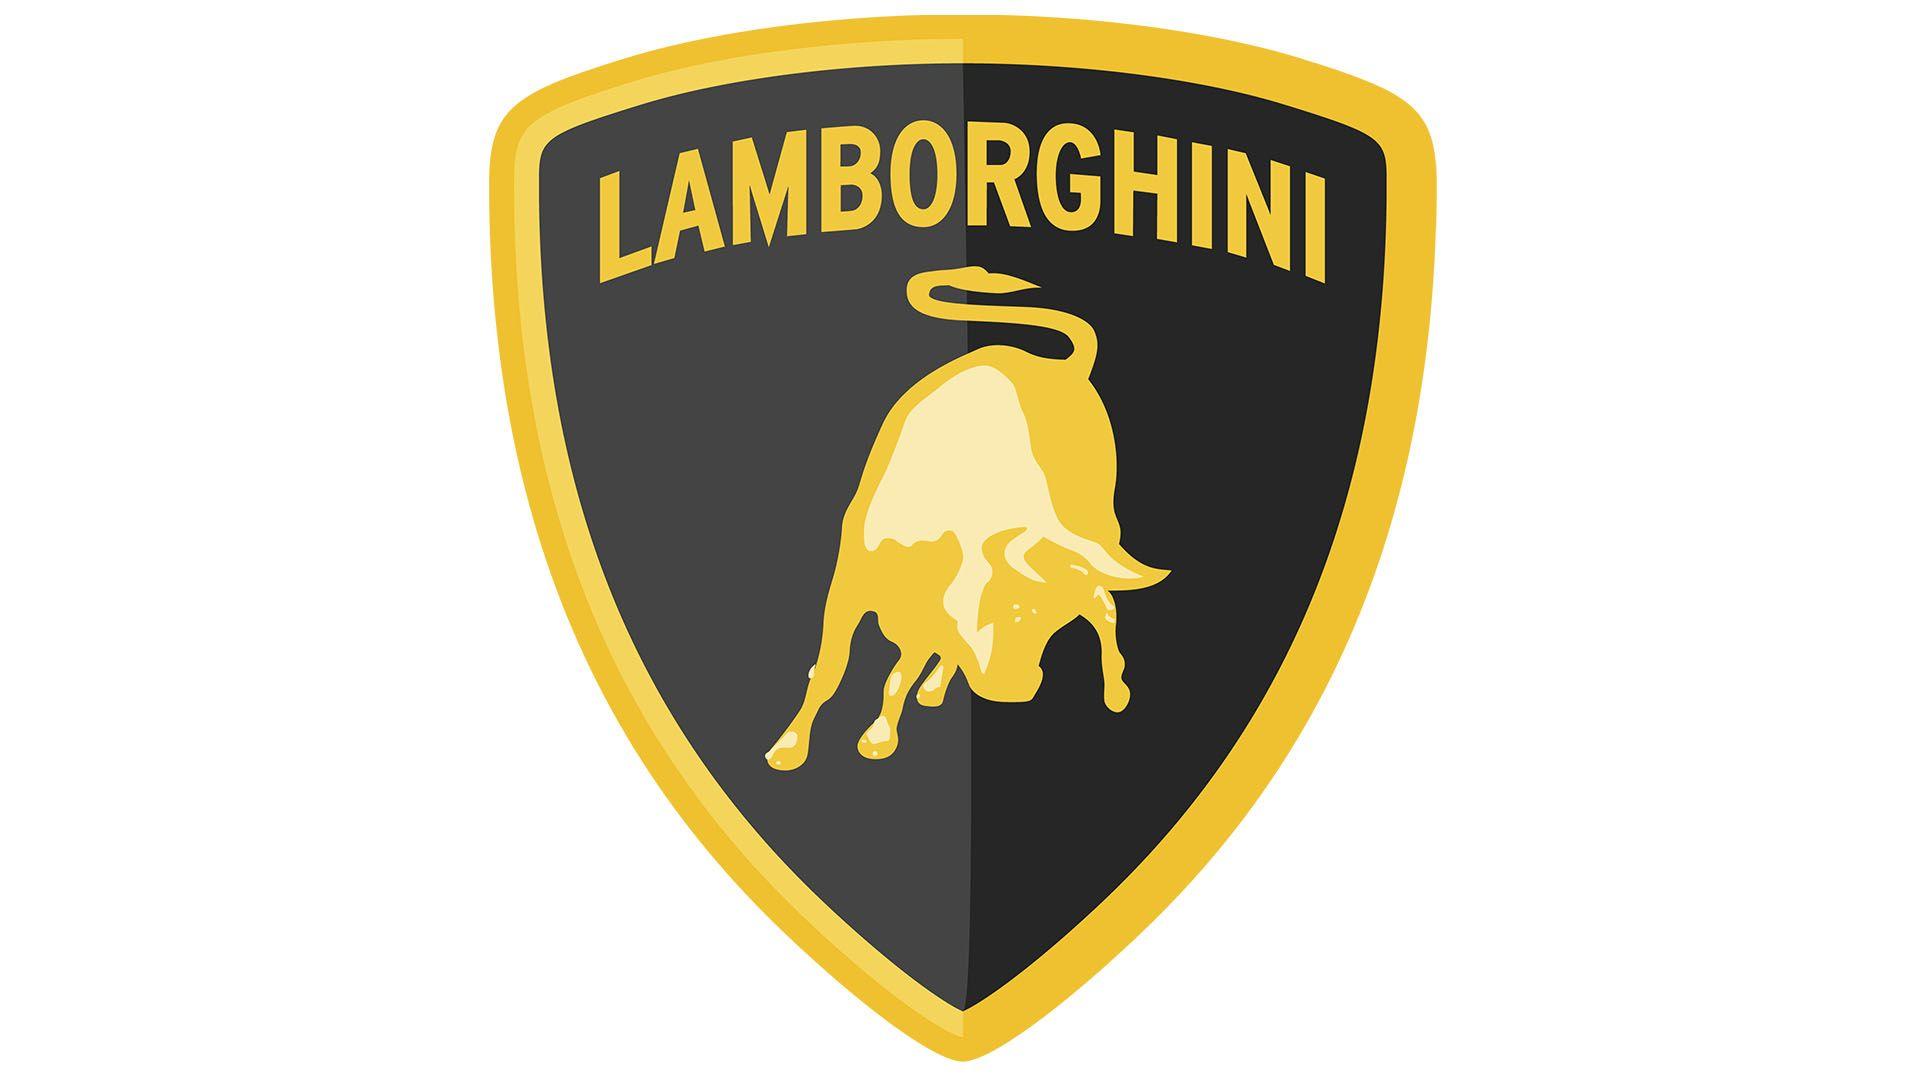 Lanmborghini Logo - Lamborghini Logo Meaning and History [Lamborghini symbol]